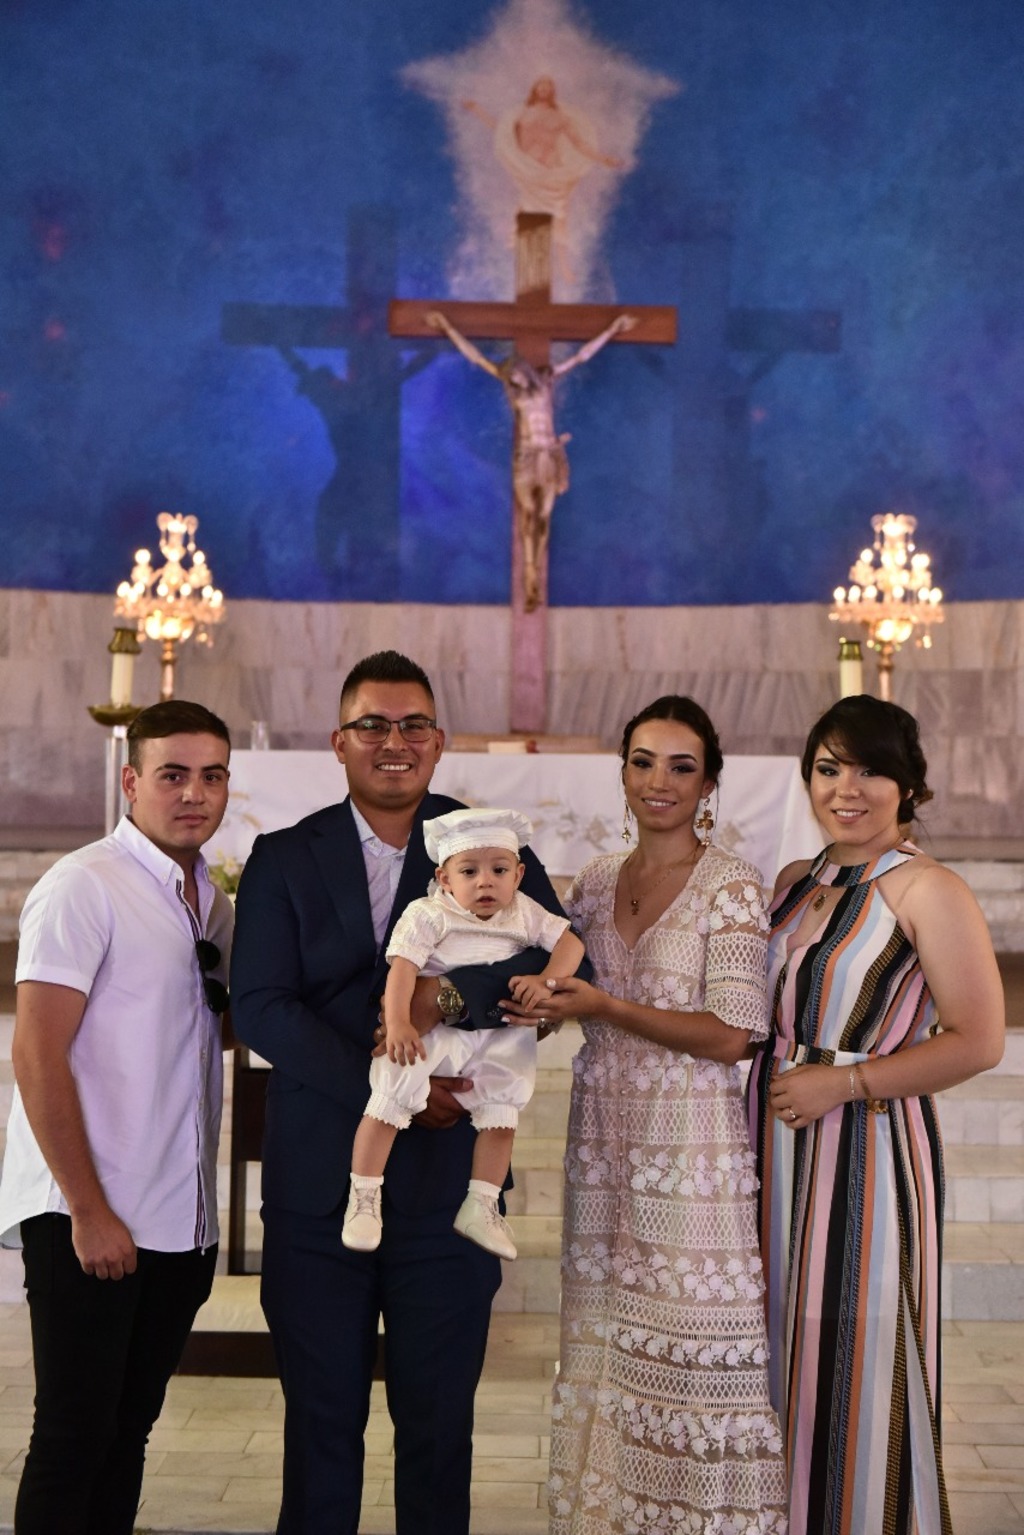 El festejado acompañado por sus padres y padrinos Cecilia Aldape y Sergio Alfaro.